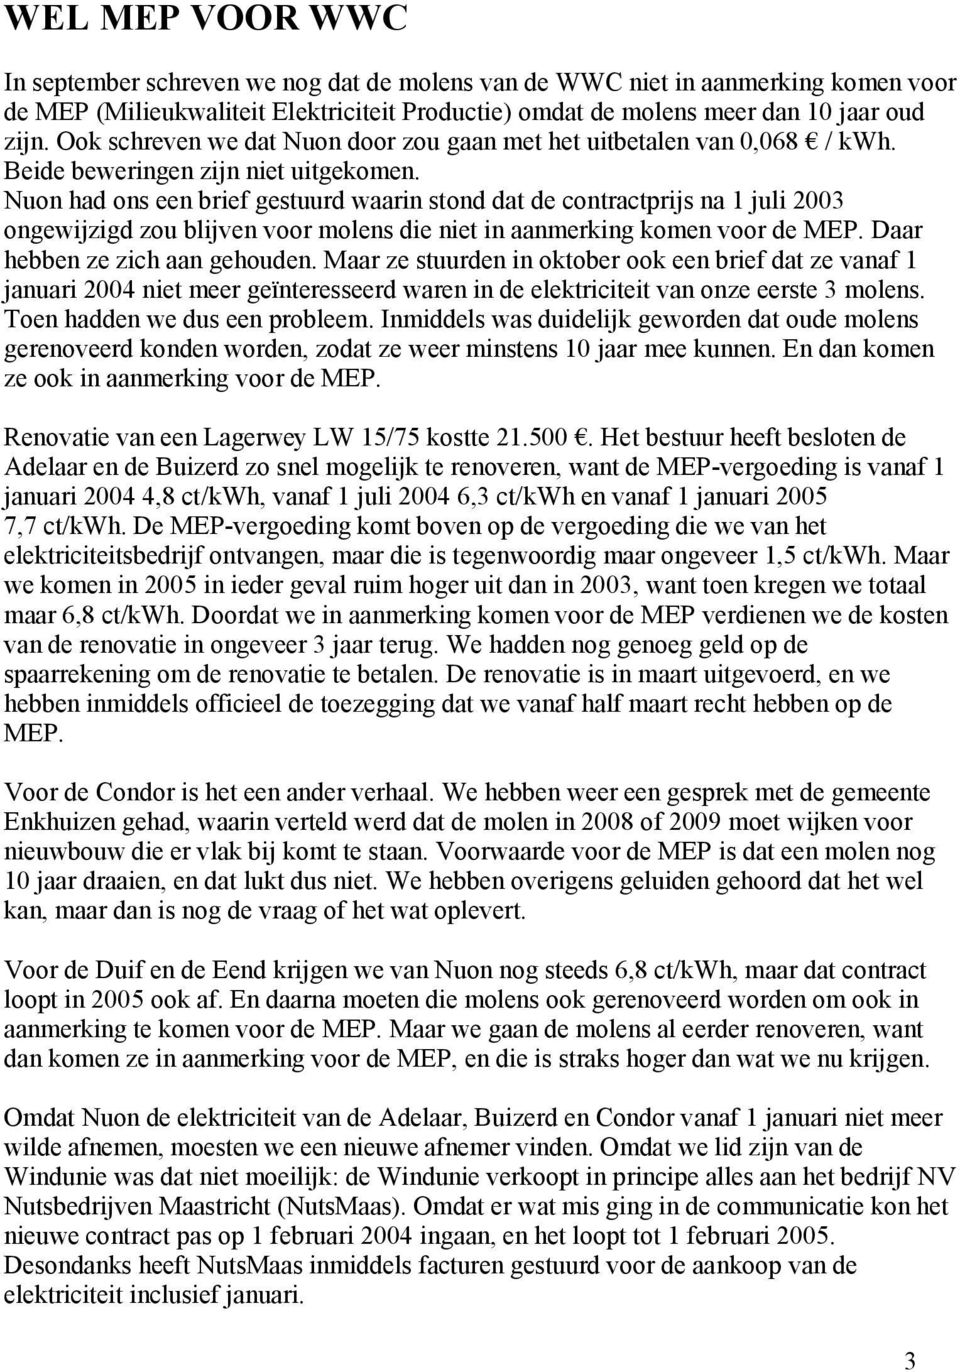 Nuon had ons een brief gestuurd waarin stond dat de contractprijs na 1 juli 2003 ongewijzigd zou blijven voor molens die niet in aanmerking komen voor de MEP. Daar hebben ze zich aan gehouden.